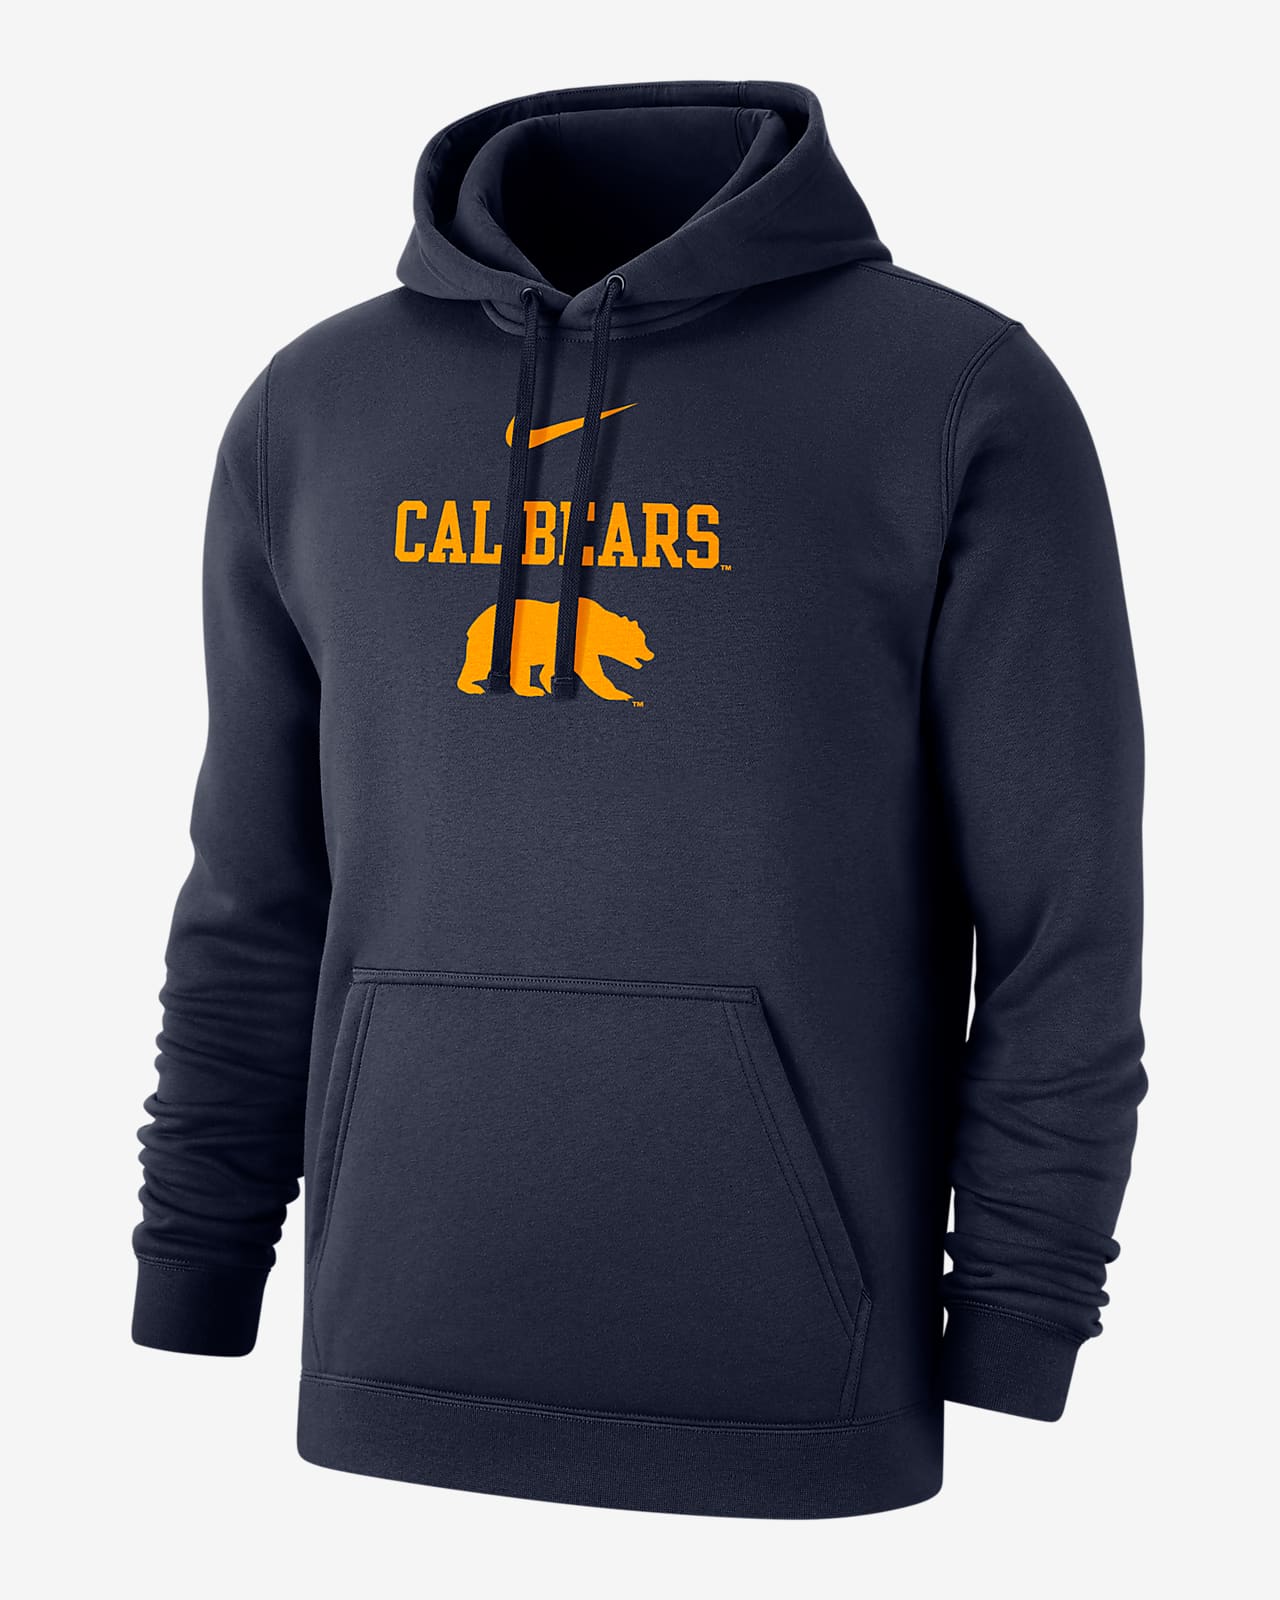 Cal Club Fleece Men's Nike College Hoodie